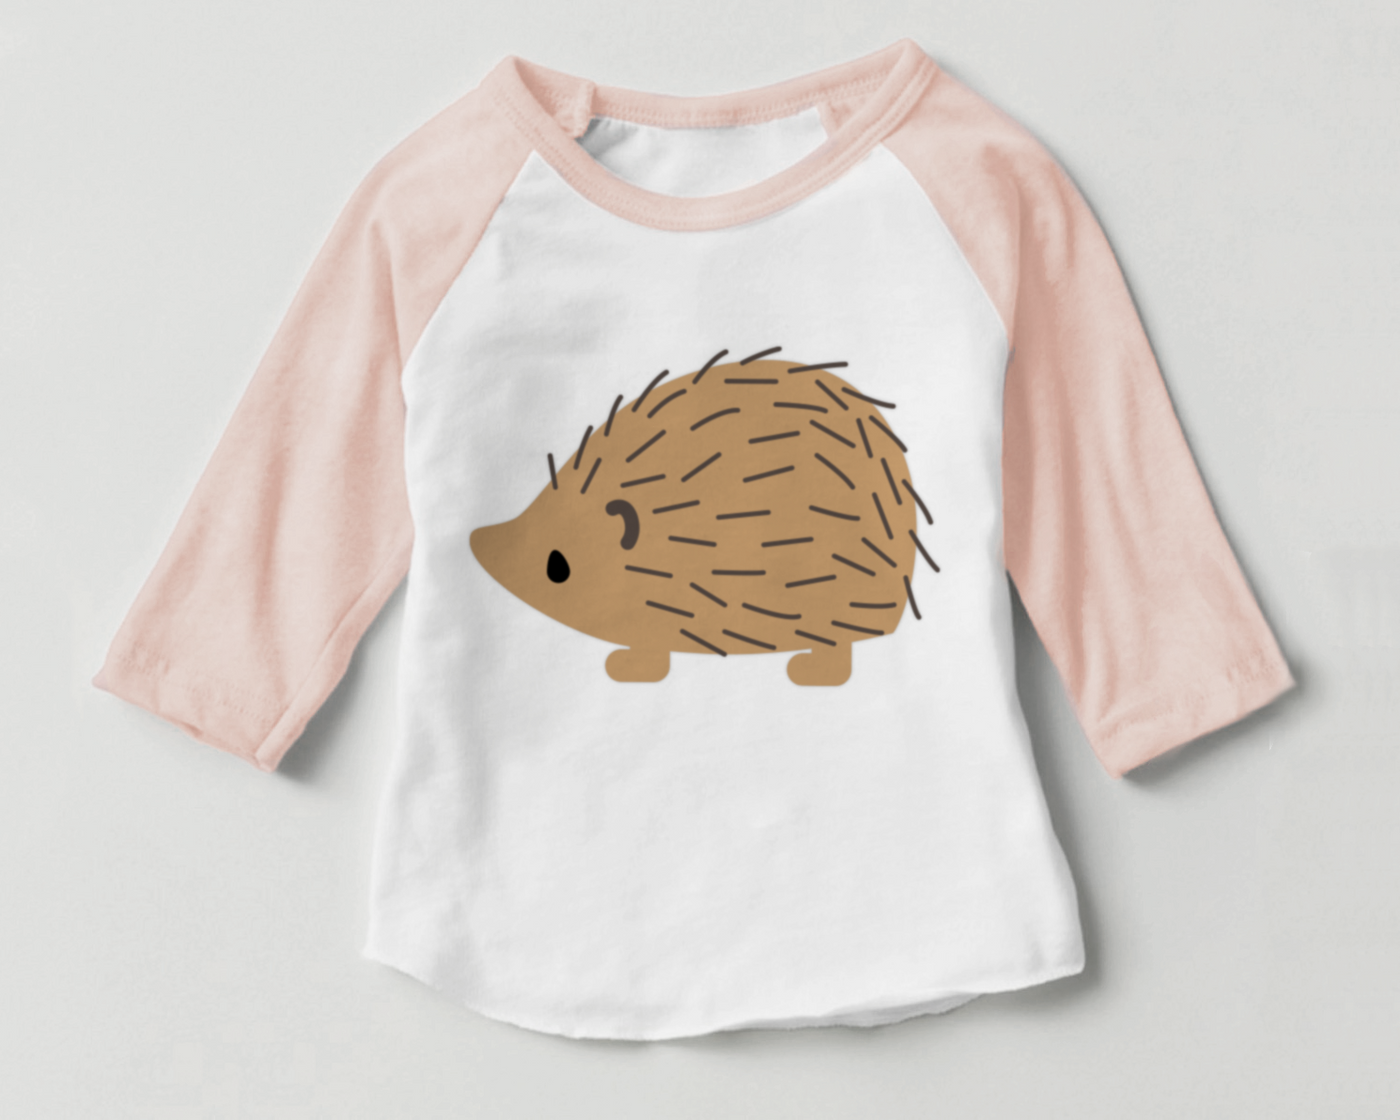 Raglan shirt with a hedgehog design